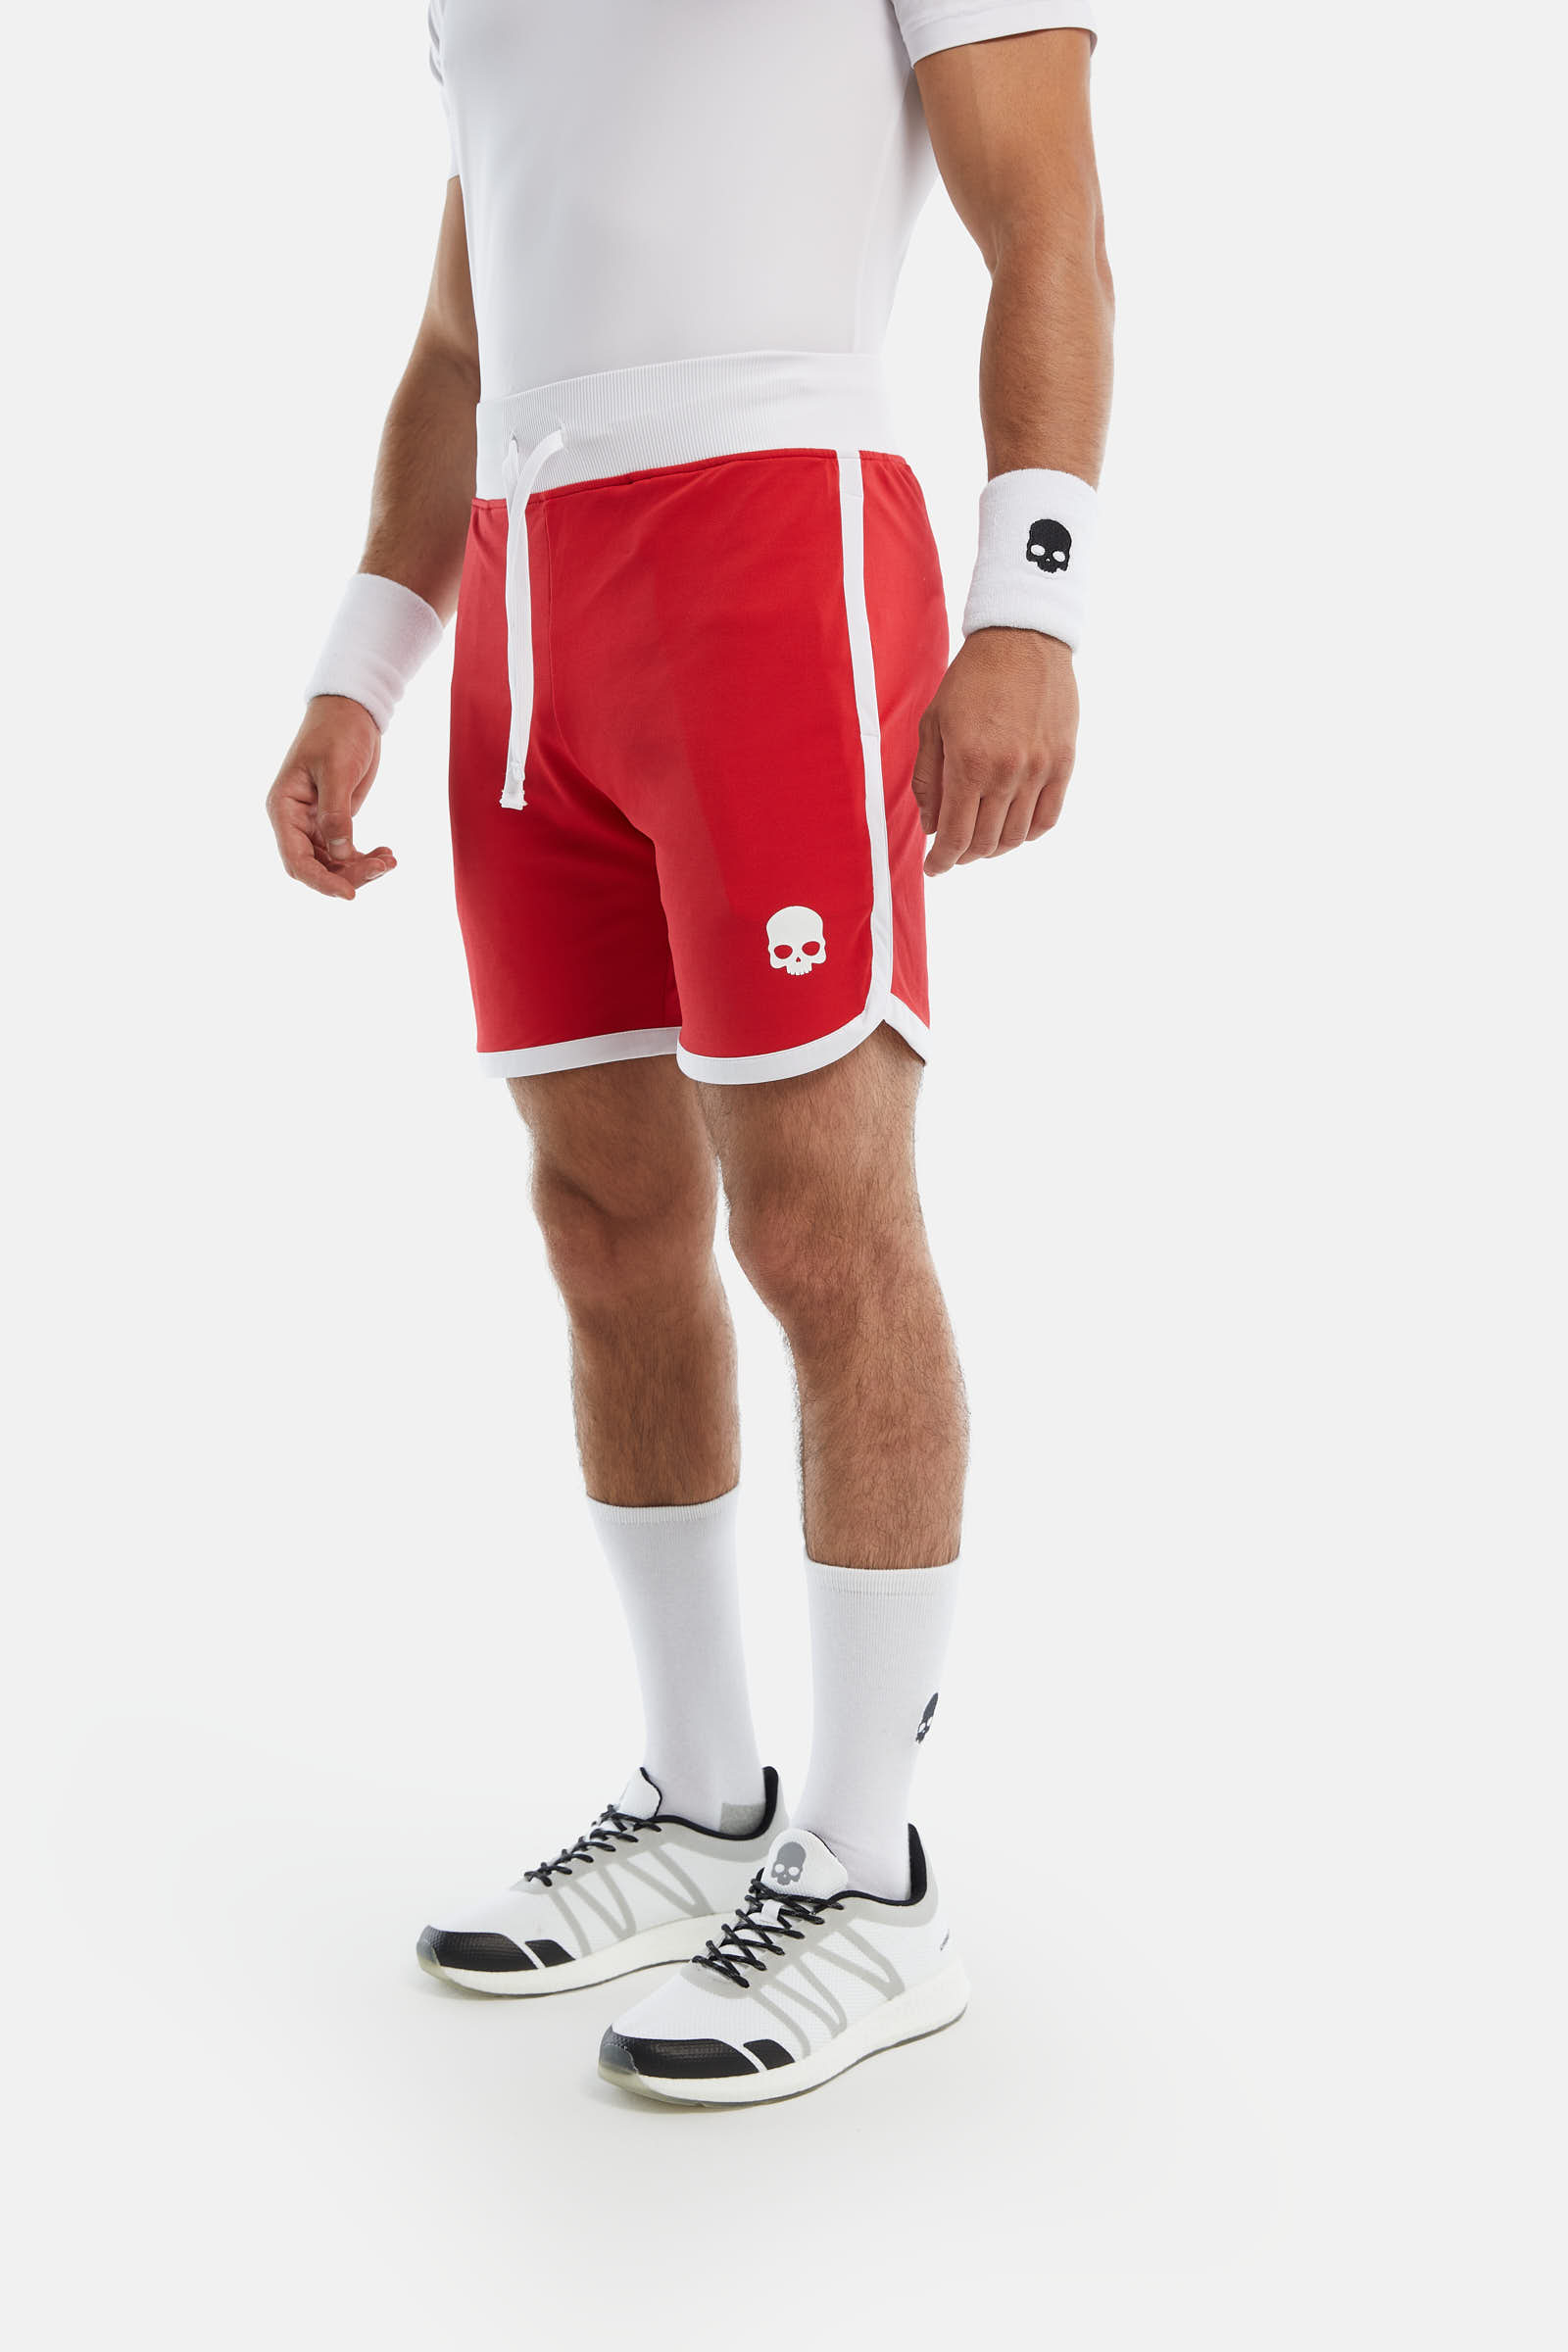 TECH SHORTS - RED,WHITE - Hydrogen - Luxury Sportwear